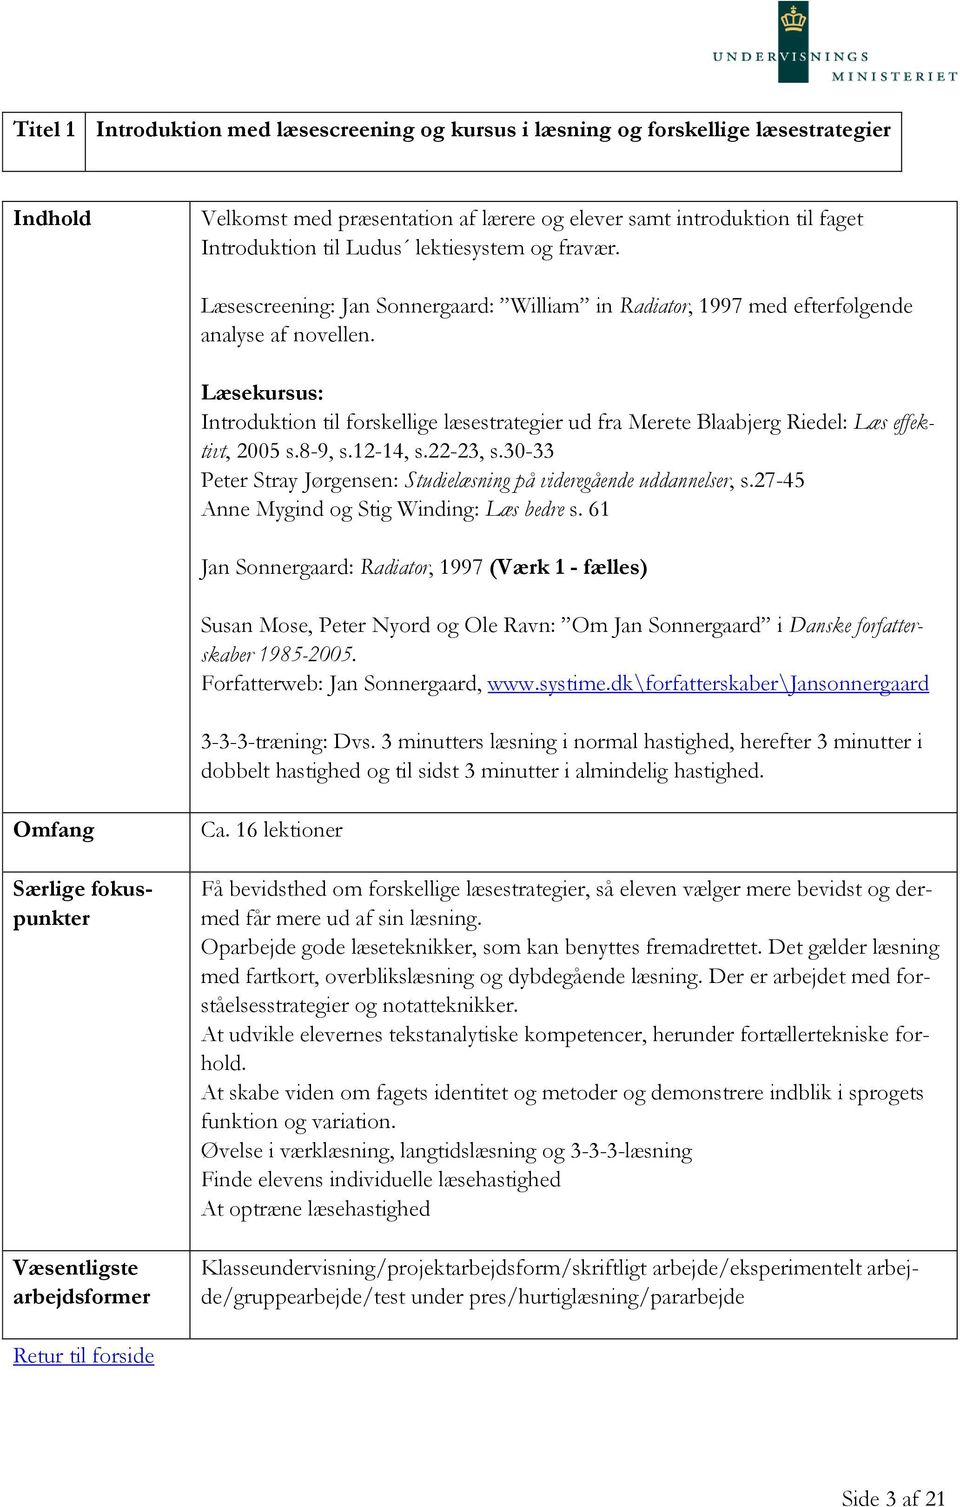 Læsekursus: Introduktion til forskellige læsestrategier ud fra Merete Blaabjerg Riedel: Læs effektivt, 2005 s.8-9, s.12-14, s.22-23, s.